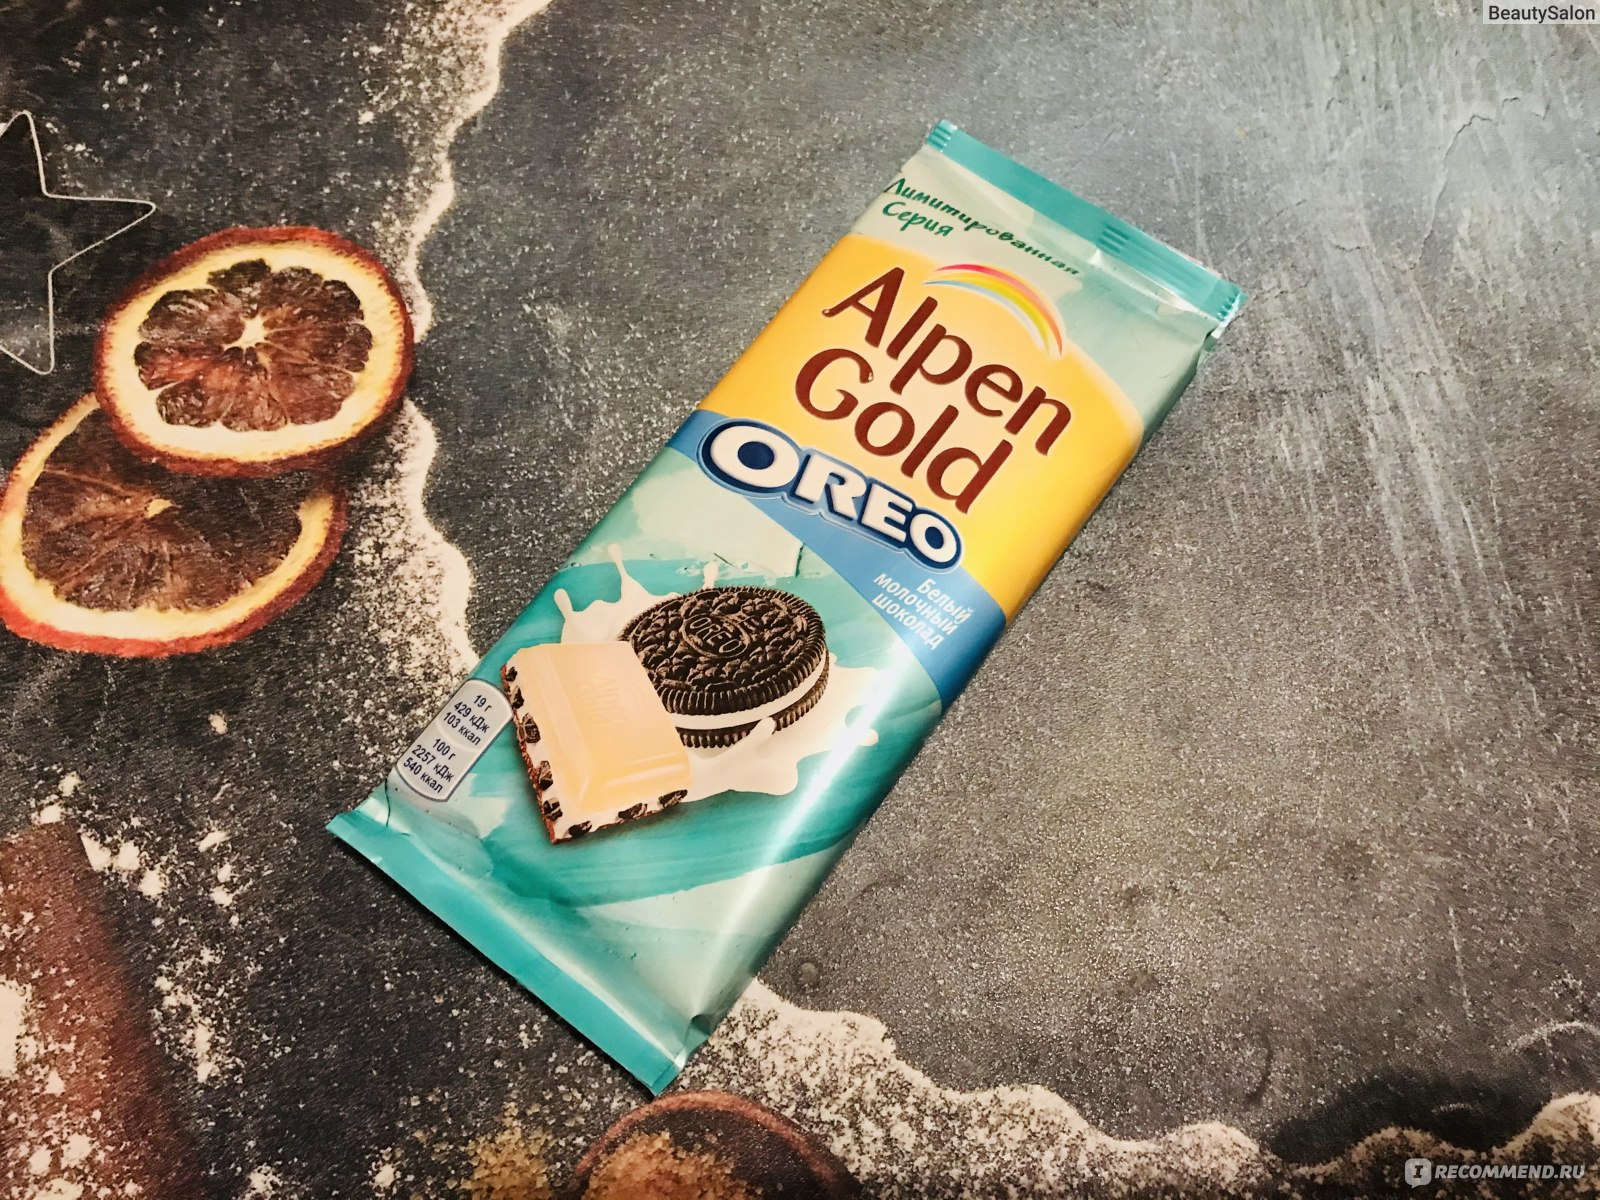 Шоколадка Альпен Гольд Орео с белым шоколадом